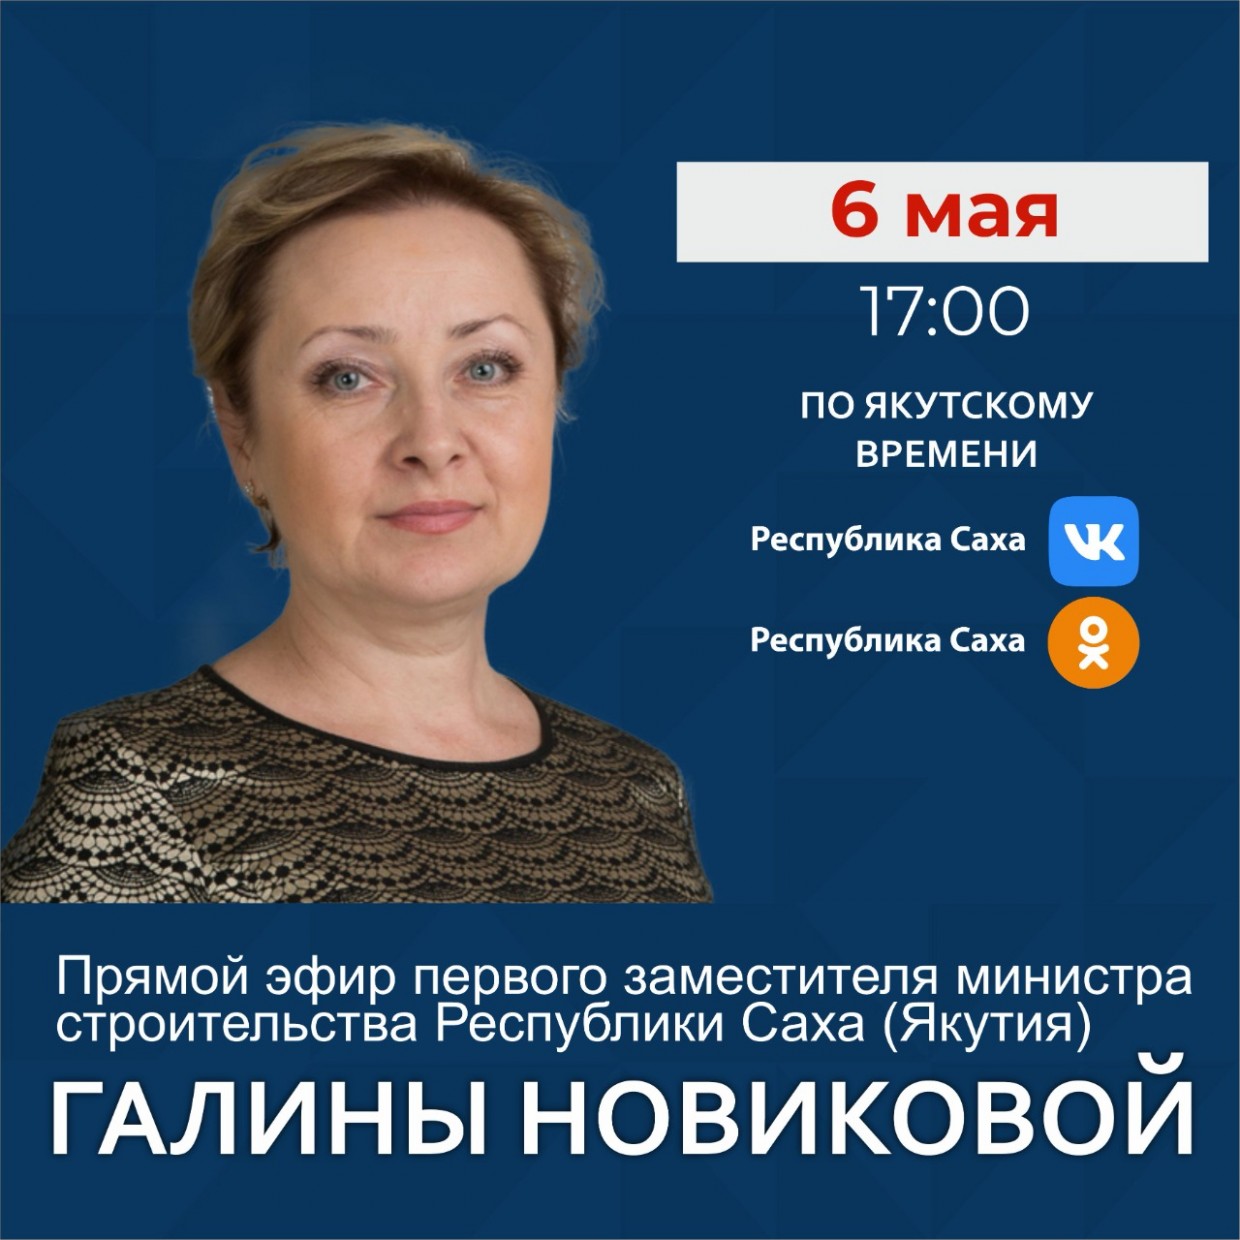 Первый замминистра строительства Якутии Галина Новикова ответит на вопросы в прямом эфире соцсетей